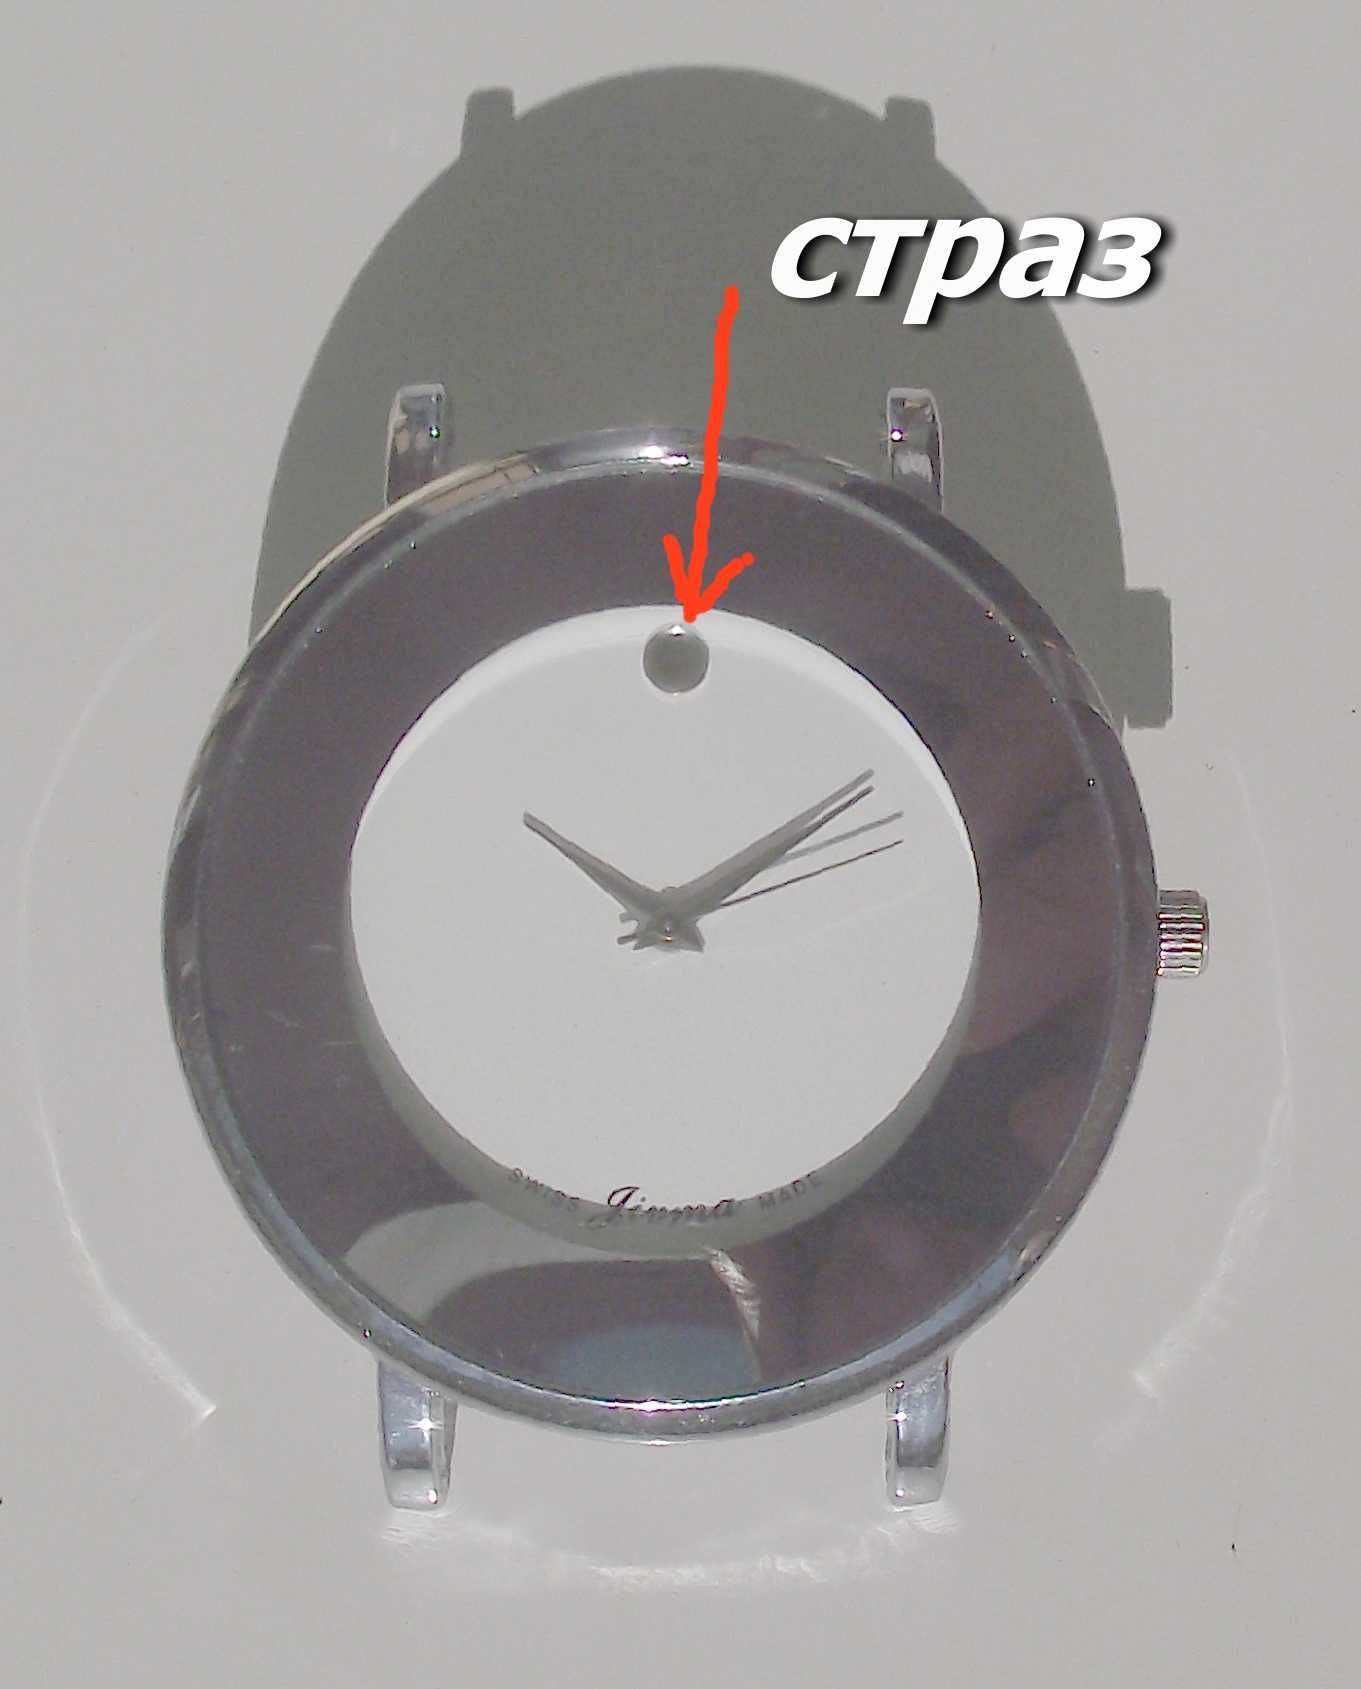 Годинники (часы) жіночі кварцеві фірми Jivma (Швейцарія) Нові! 2 шт.